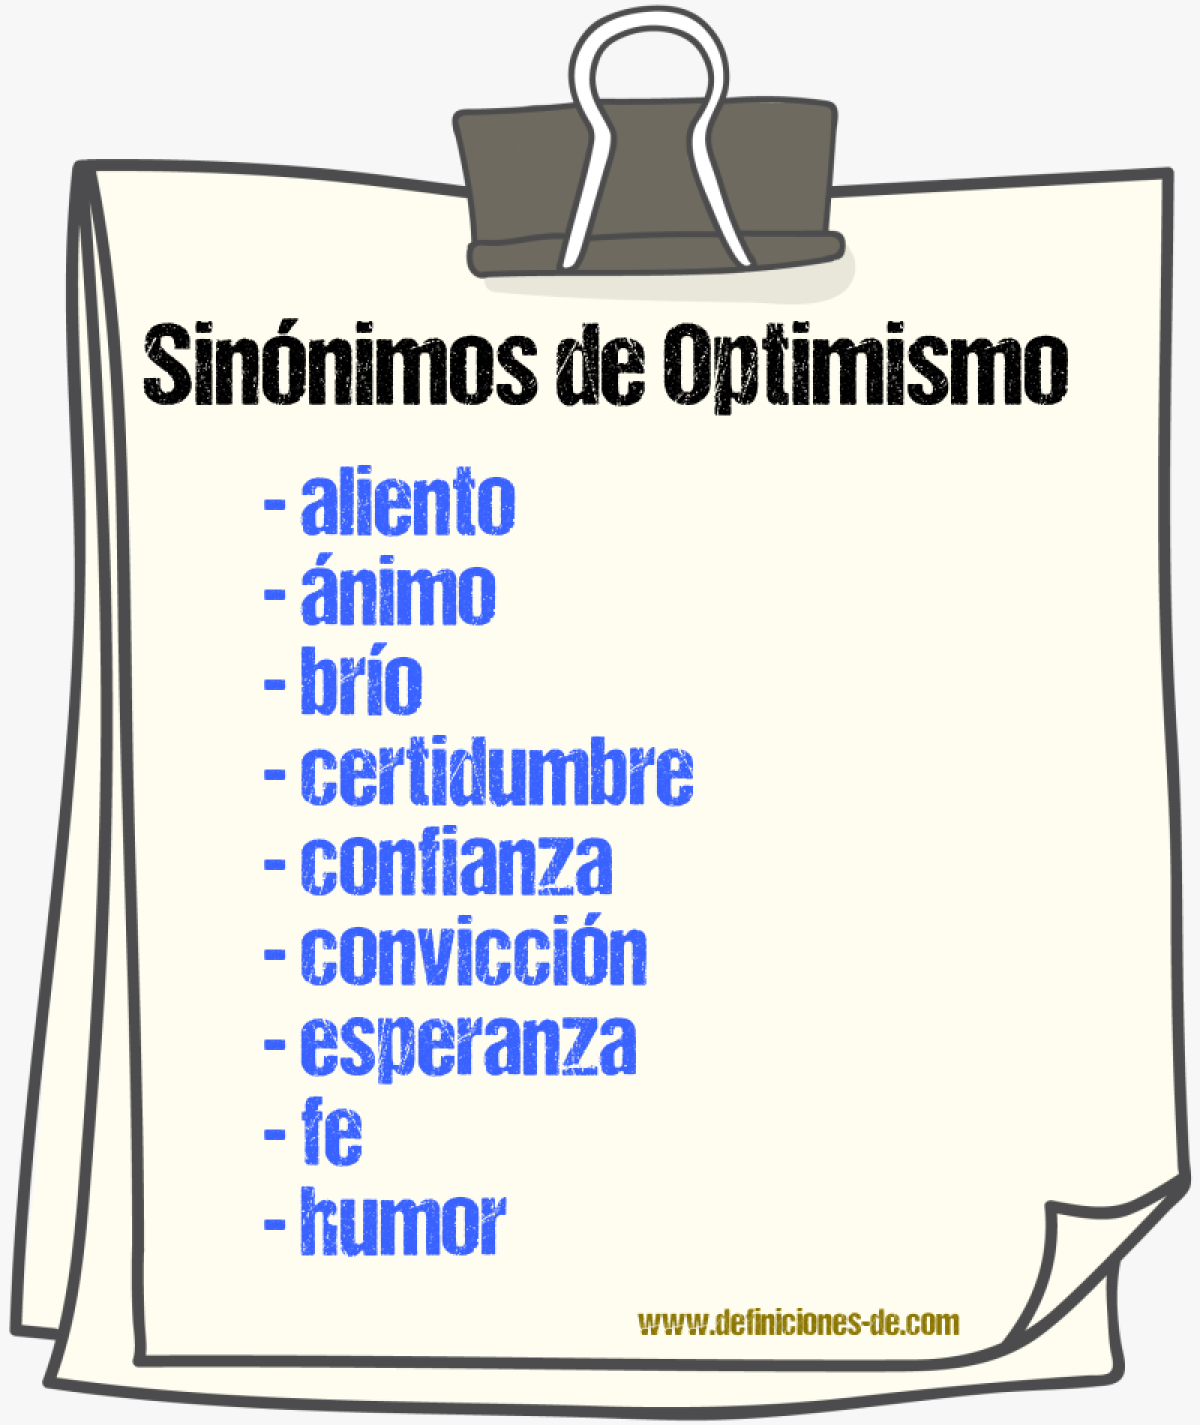 Sinónimos de optimismo